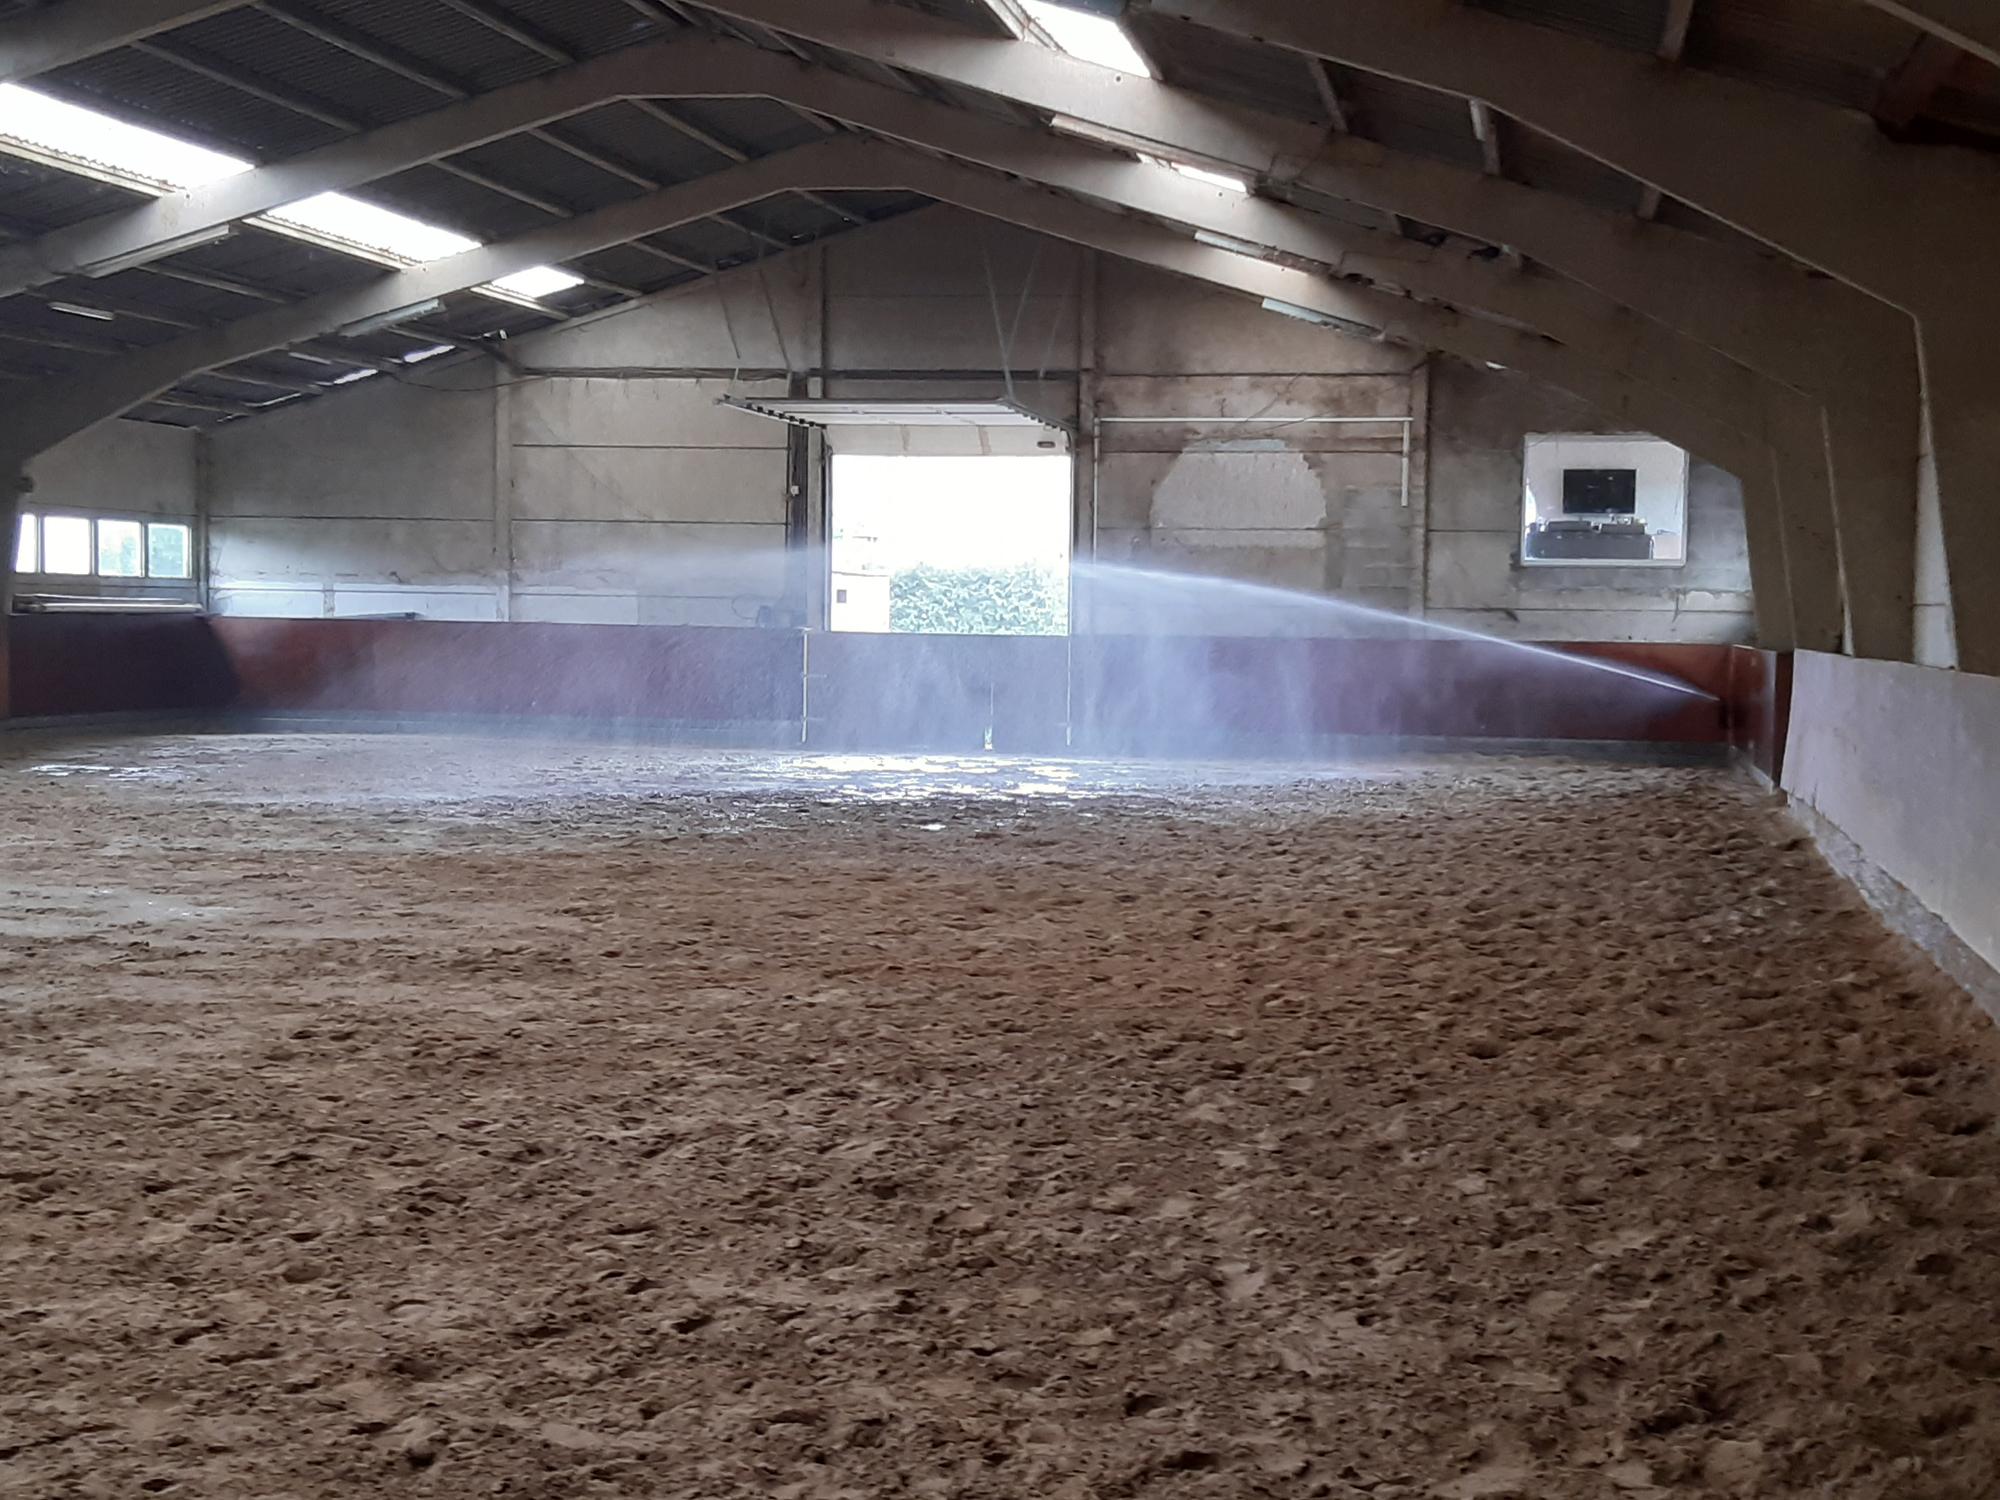 Ontijzering van grondwater met filter en het beregenen van paardenpistes aan de hand van een beregeningsinstallatie 